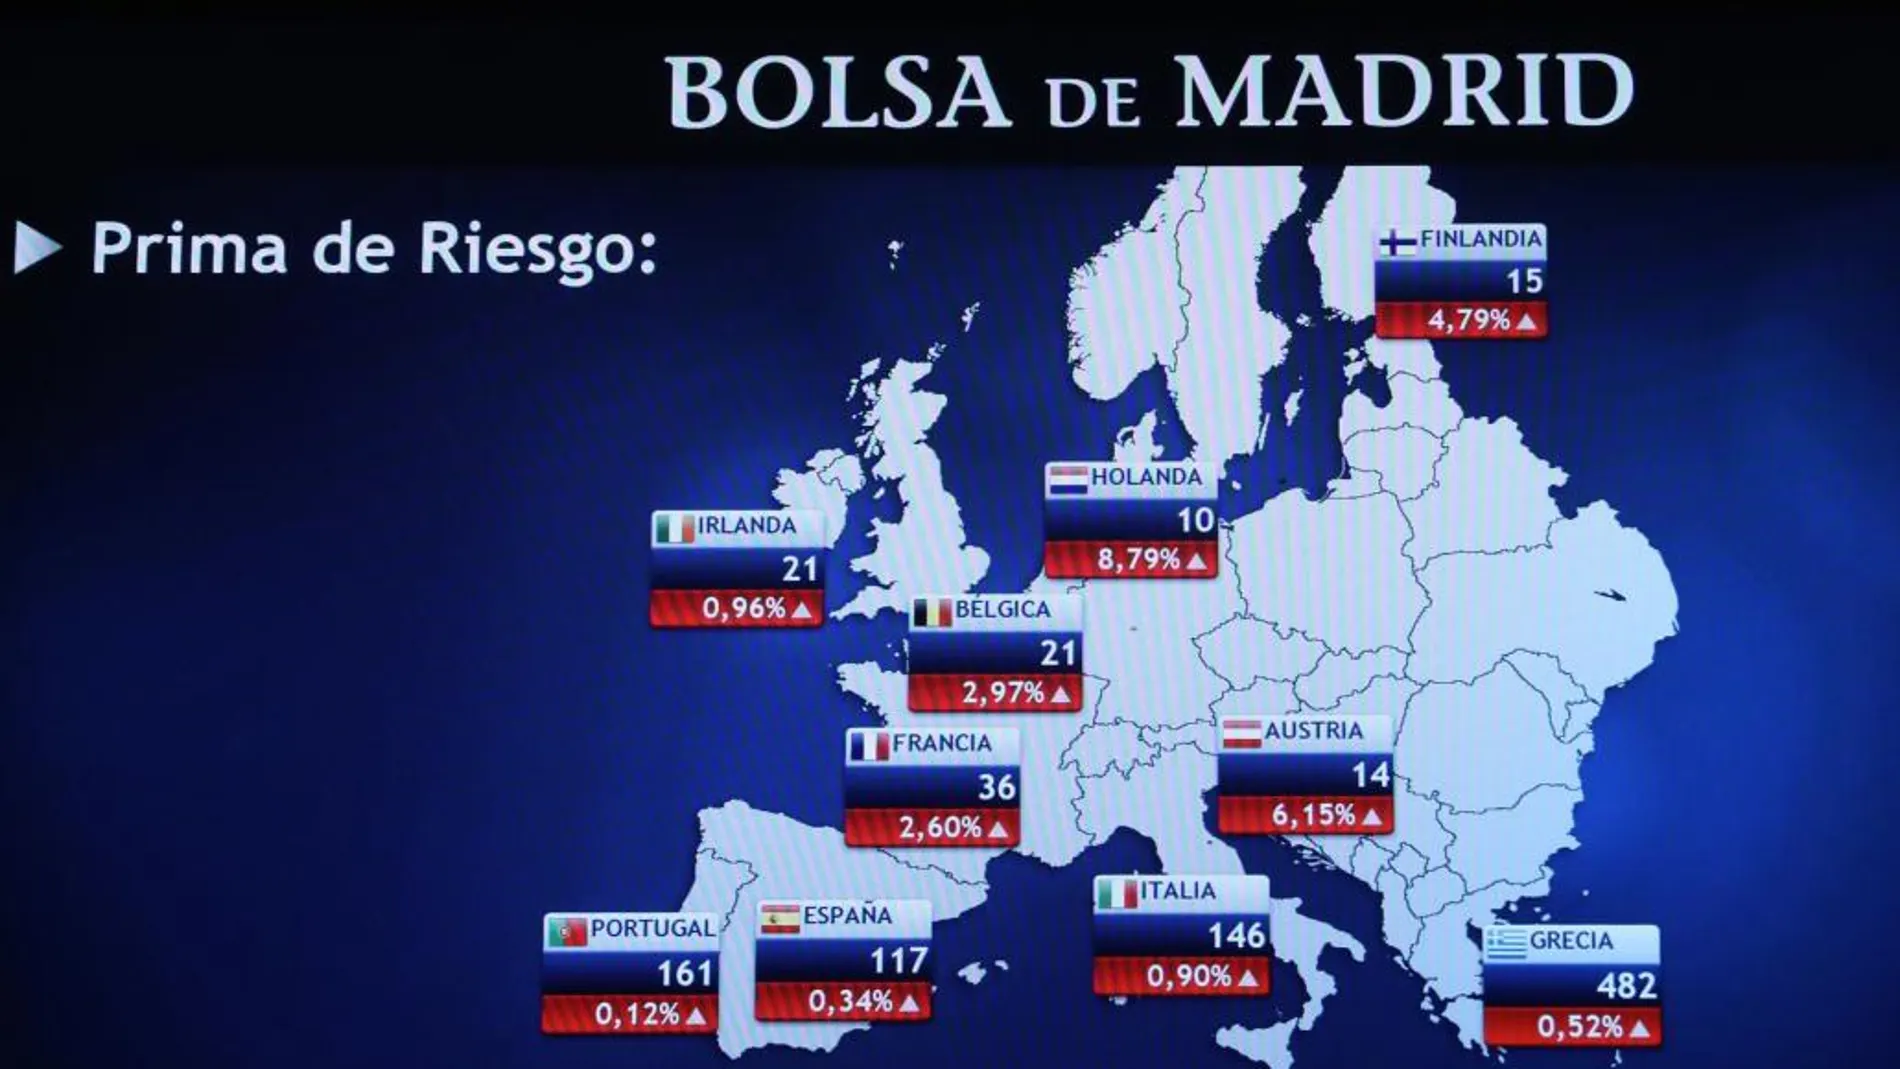 Panel informativo de la Bolsa de Madrid, que muestra los valores de la prima de riesgo,